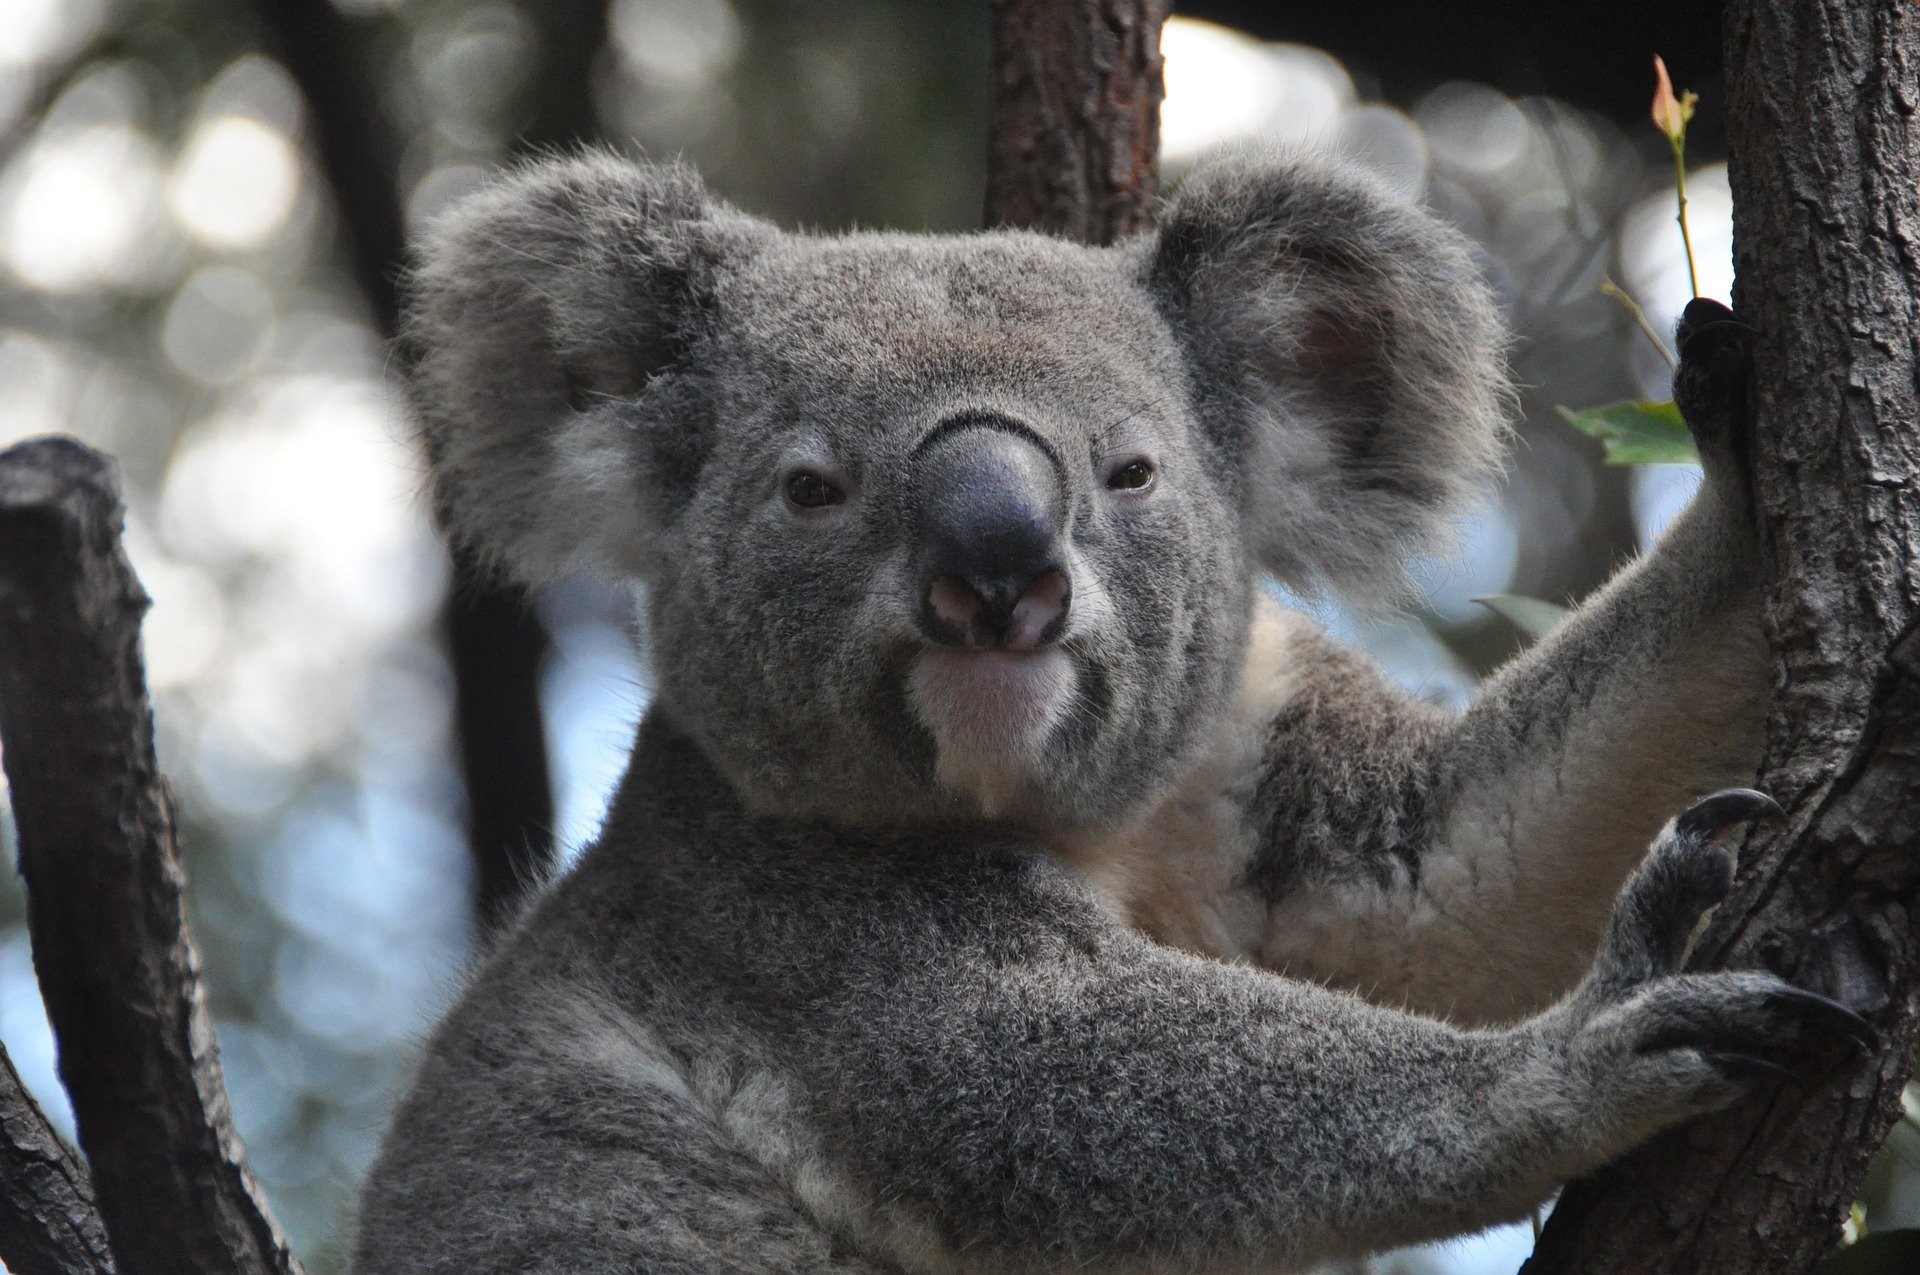 La reconnaissance faciale à la rescousse des koalas